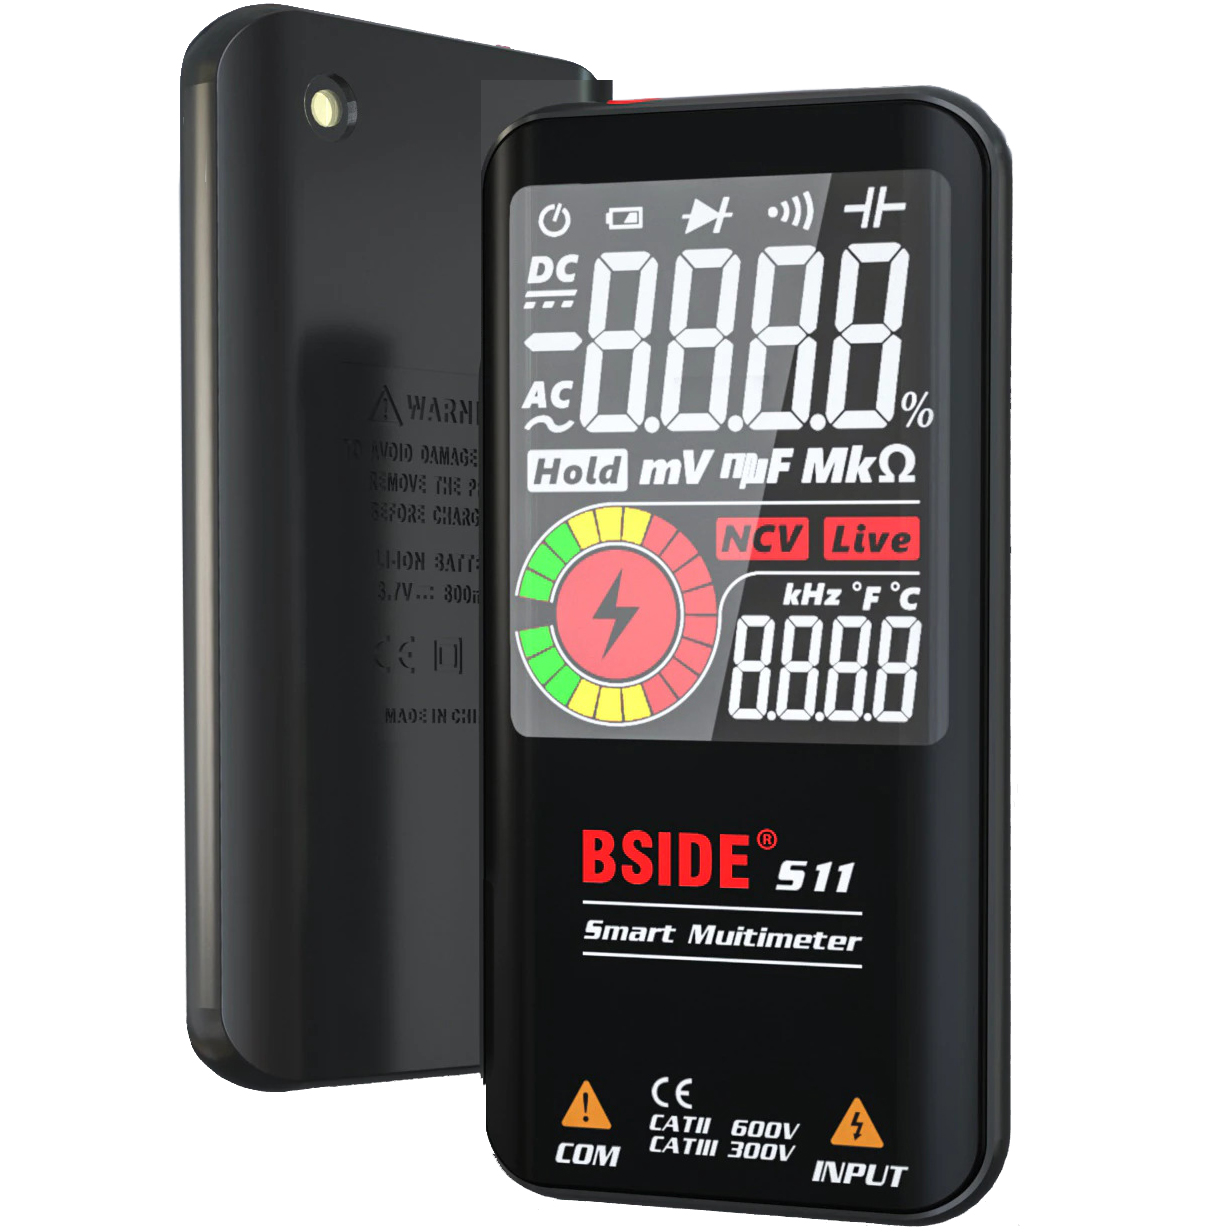 Мультиметр-автомат BSIDE S11 карманный, на аккумуляторе, напряжение ±/~ до 600v, Сопротивление до 60 mOm, ёмкость до 100 mF, частотомер, прзвонка, диоды, бесконтактный датчик напряжения NCV, термометр, 